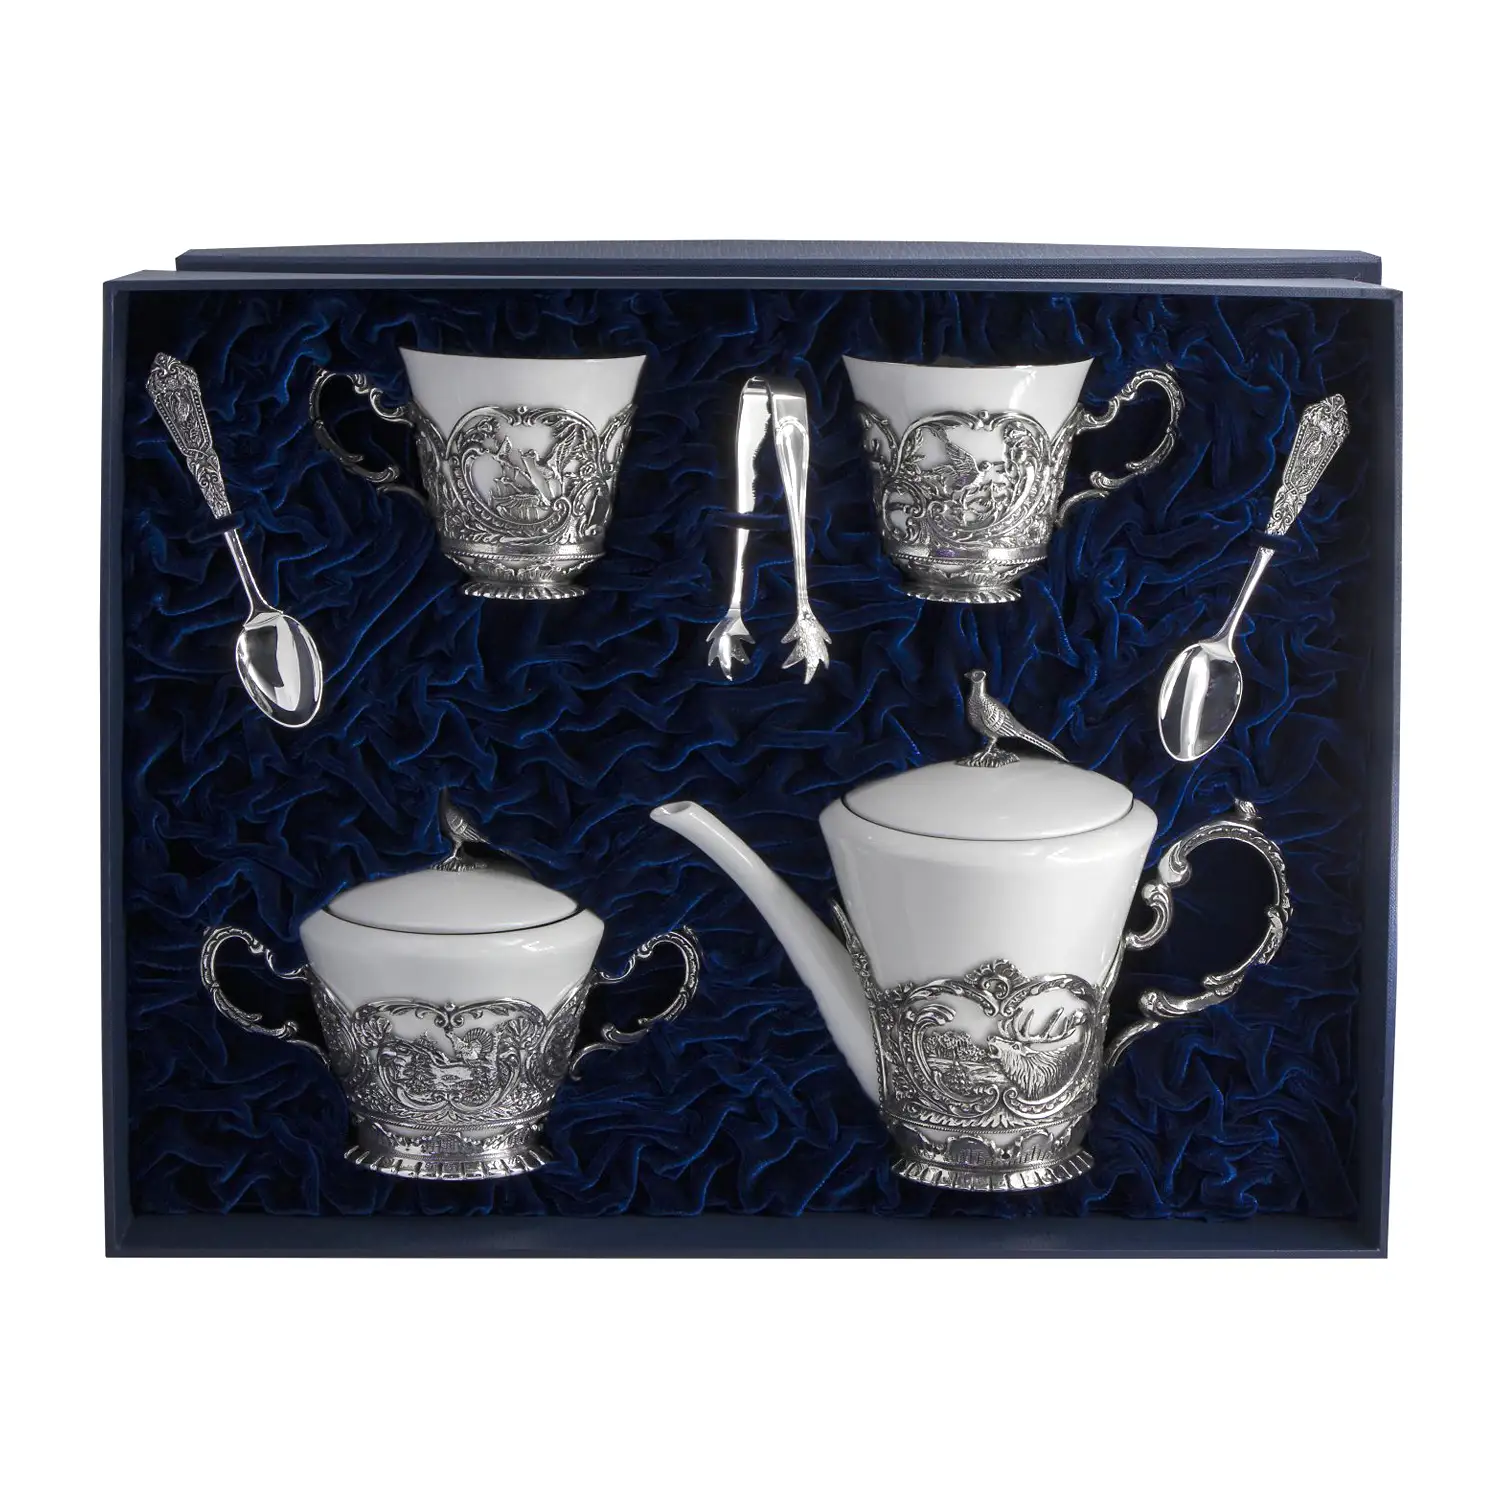 Набор Королевская охота: ложка, чашка, чайник, сахарница (Серебро 925) набор симфония чашка ложка чайник серебро 925